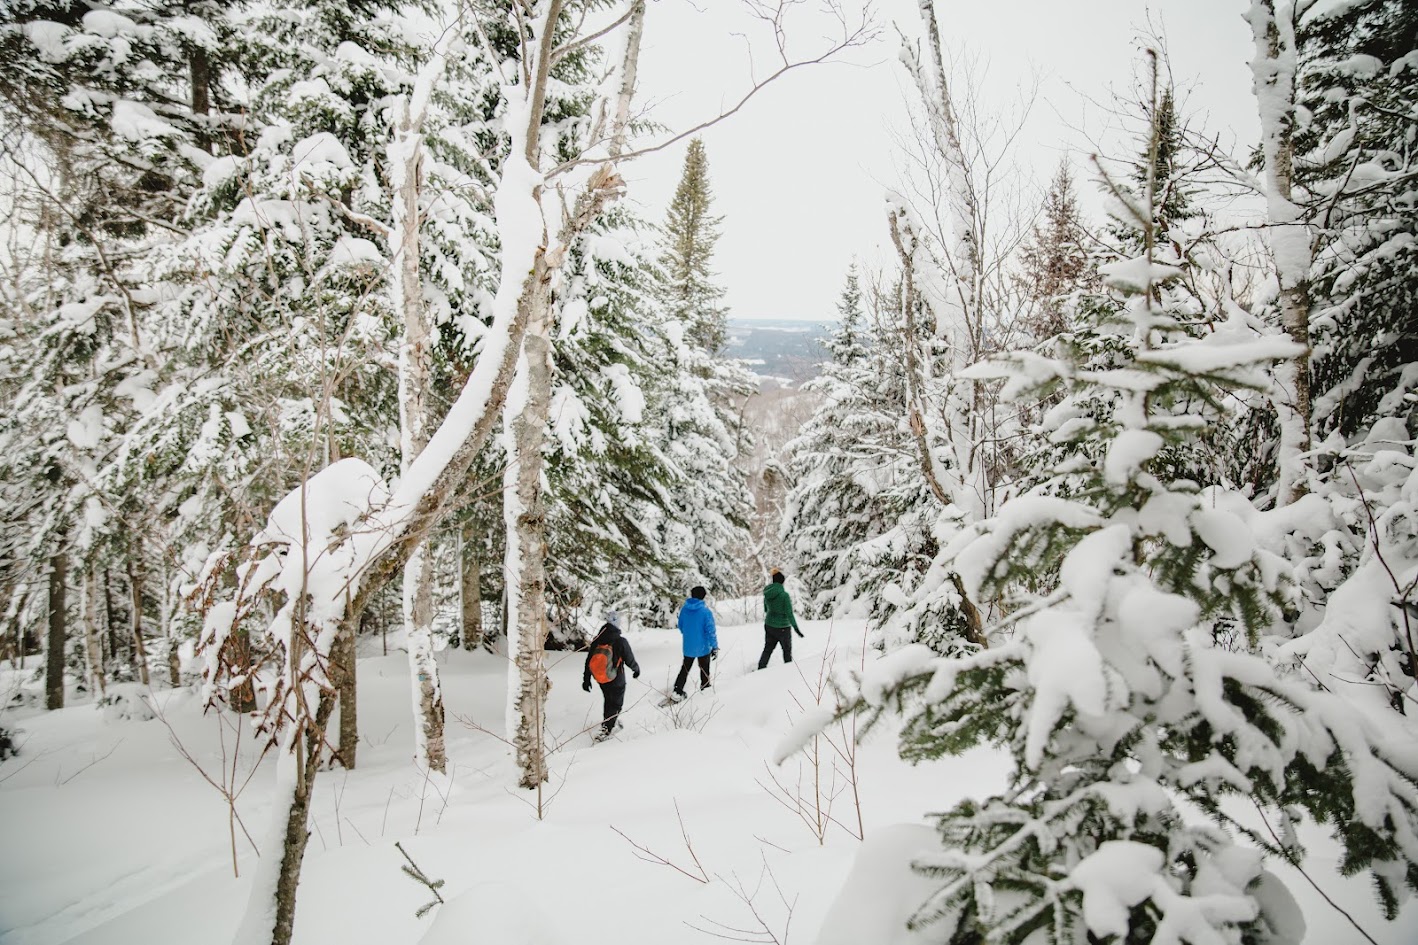 Trois personnes font une randonnée à travers une forêt enneigée, avec des arbres enneigés bordant le chemin et une vue lointaine sur une vallée partiellement visible à travers les bois.